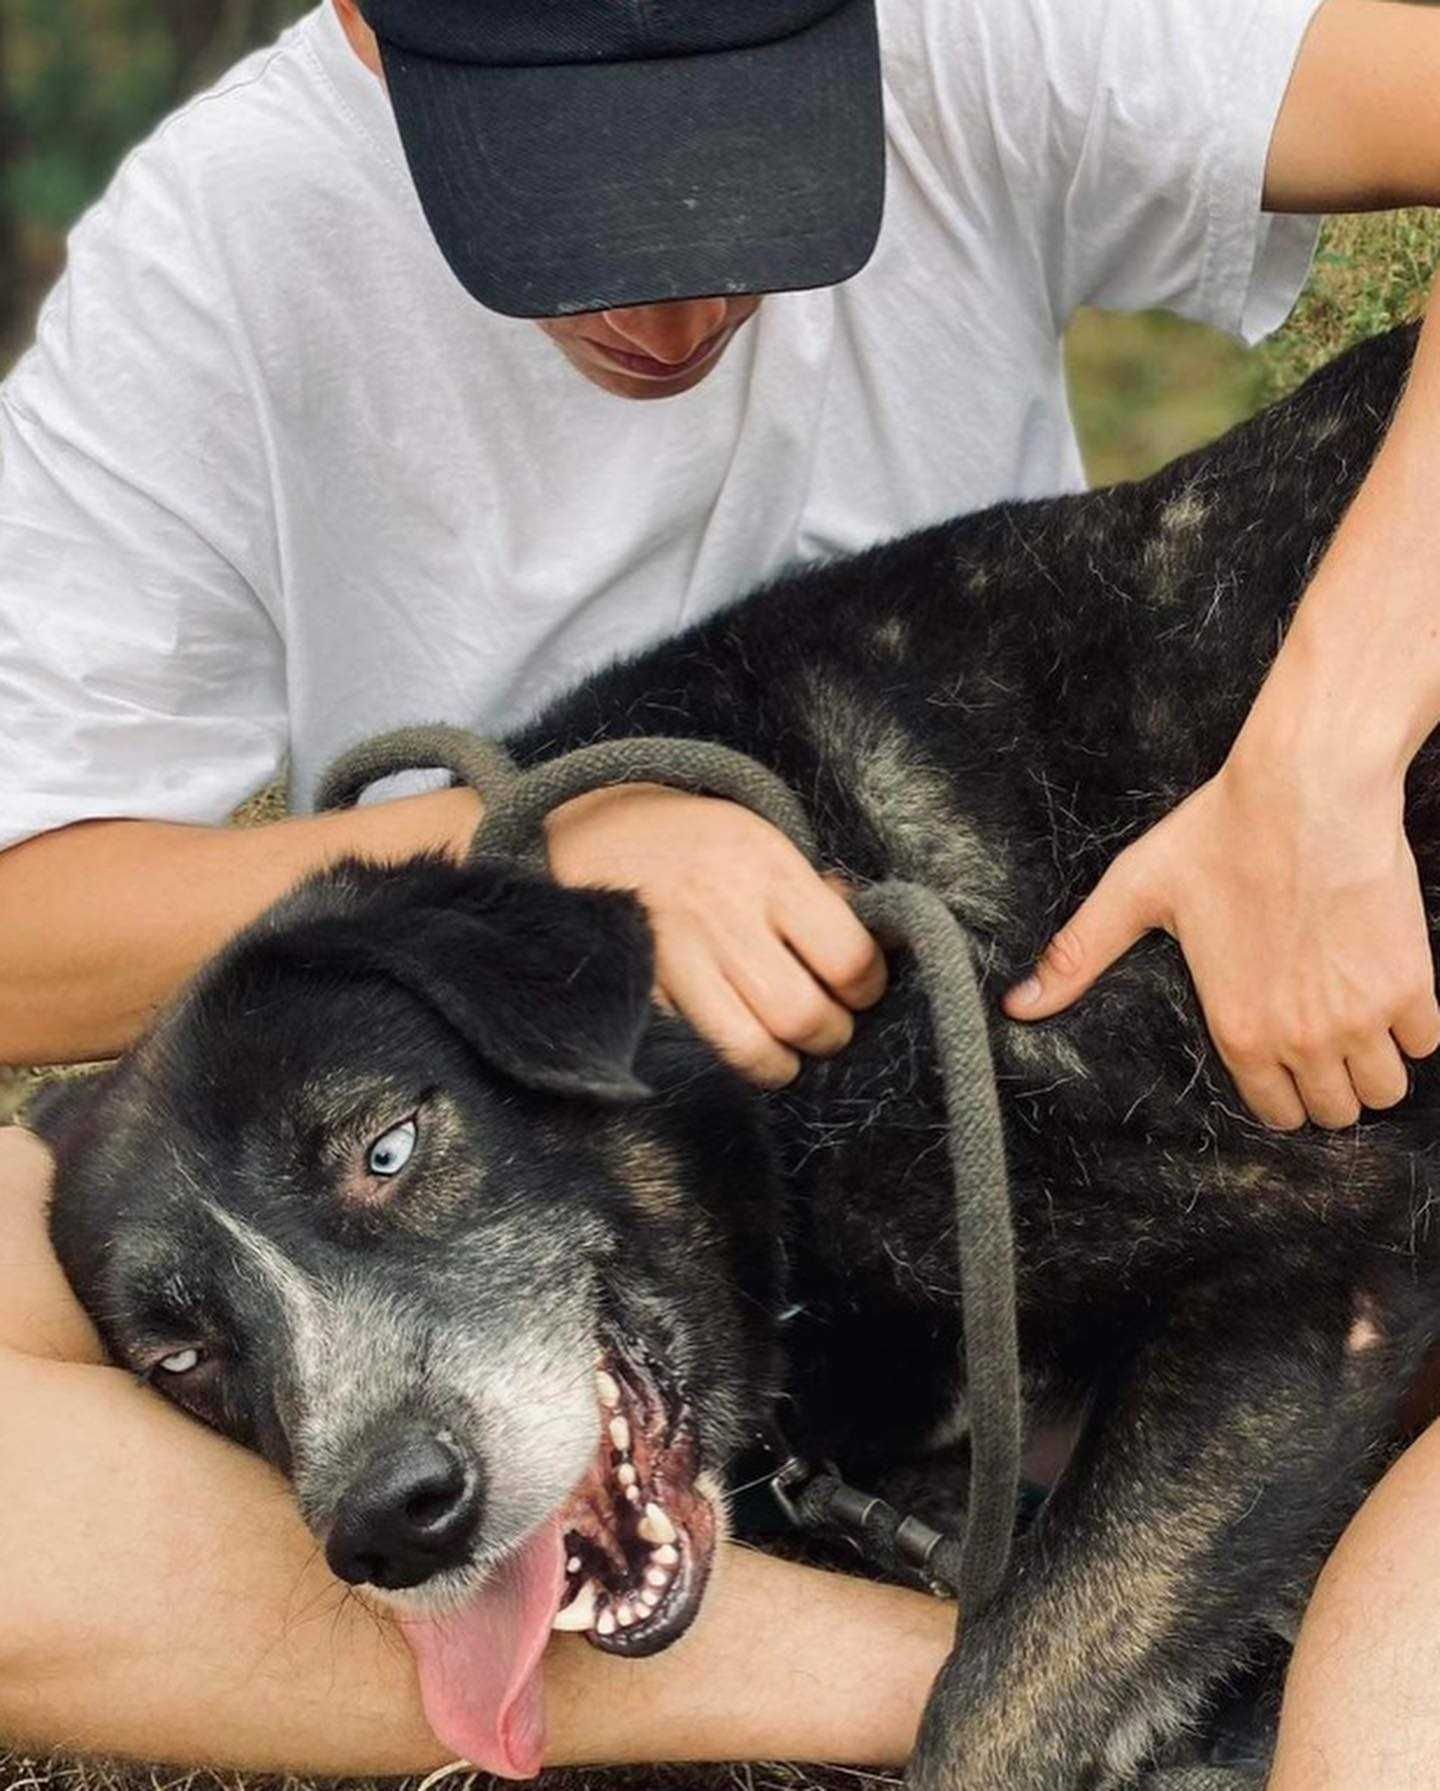 Diesel - oczy północniaka, charakter misiaka pies do adopcji